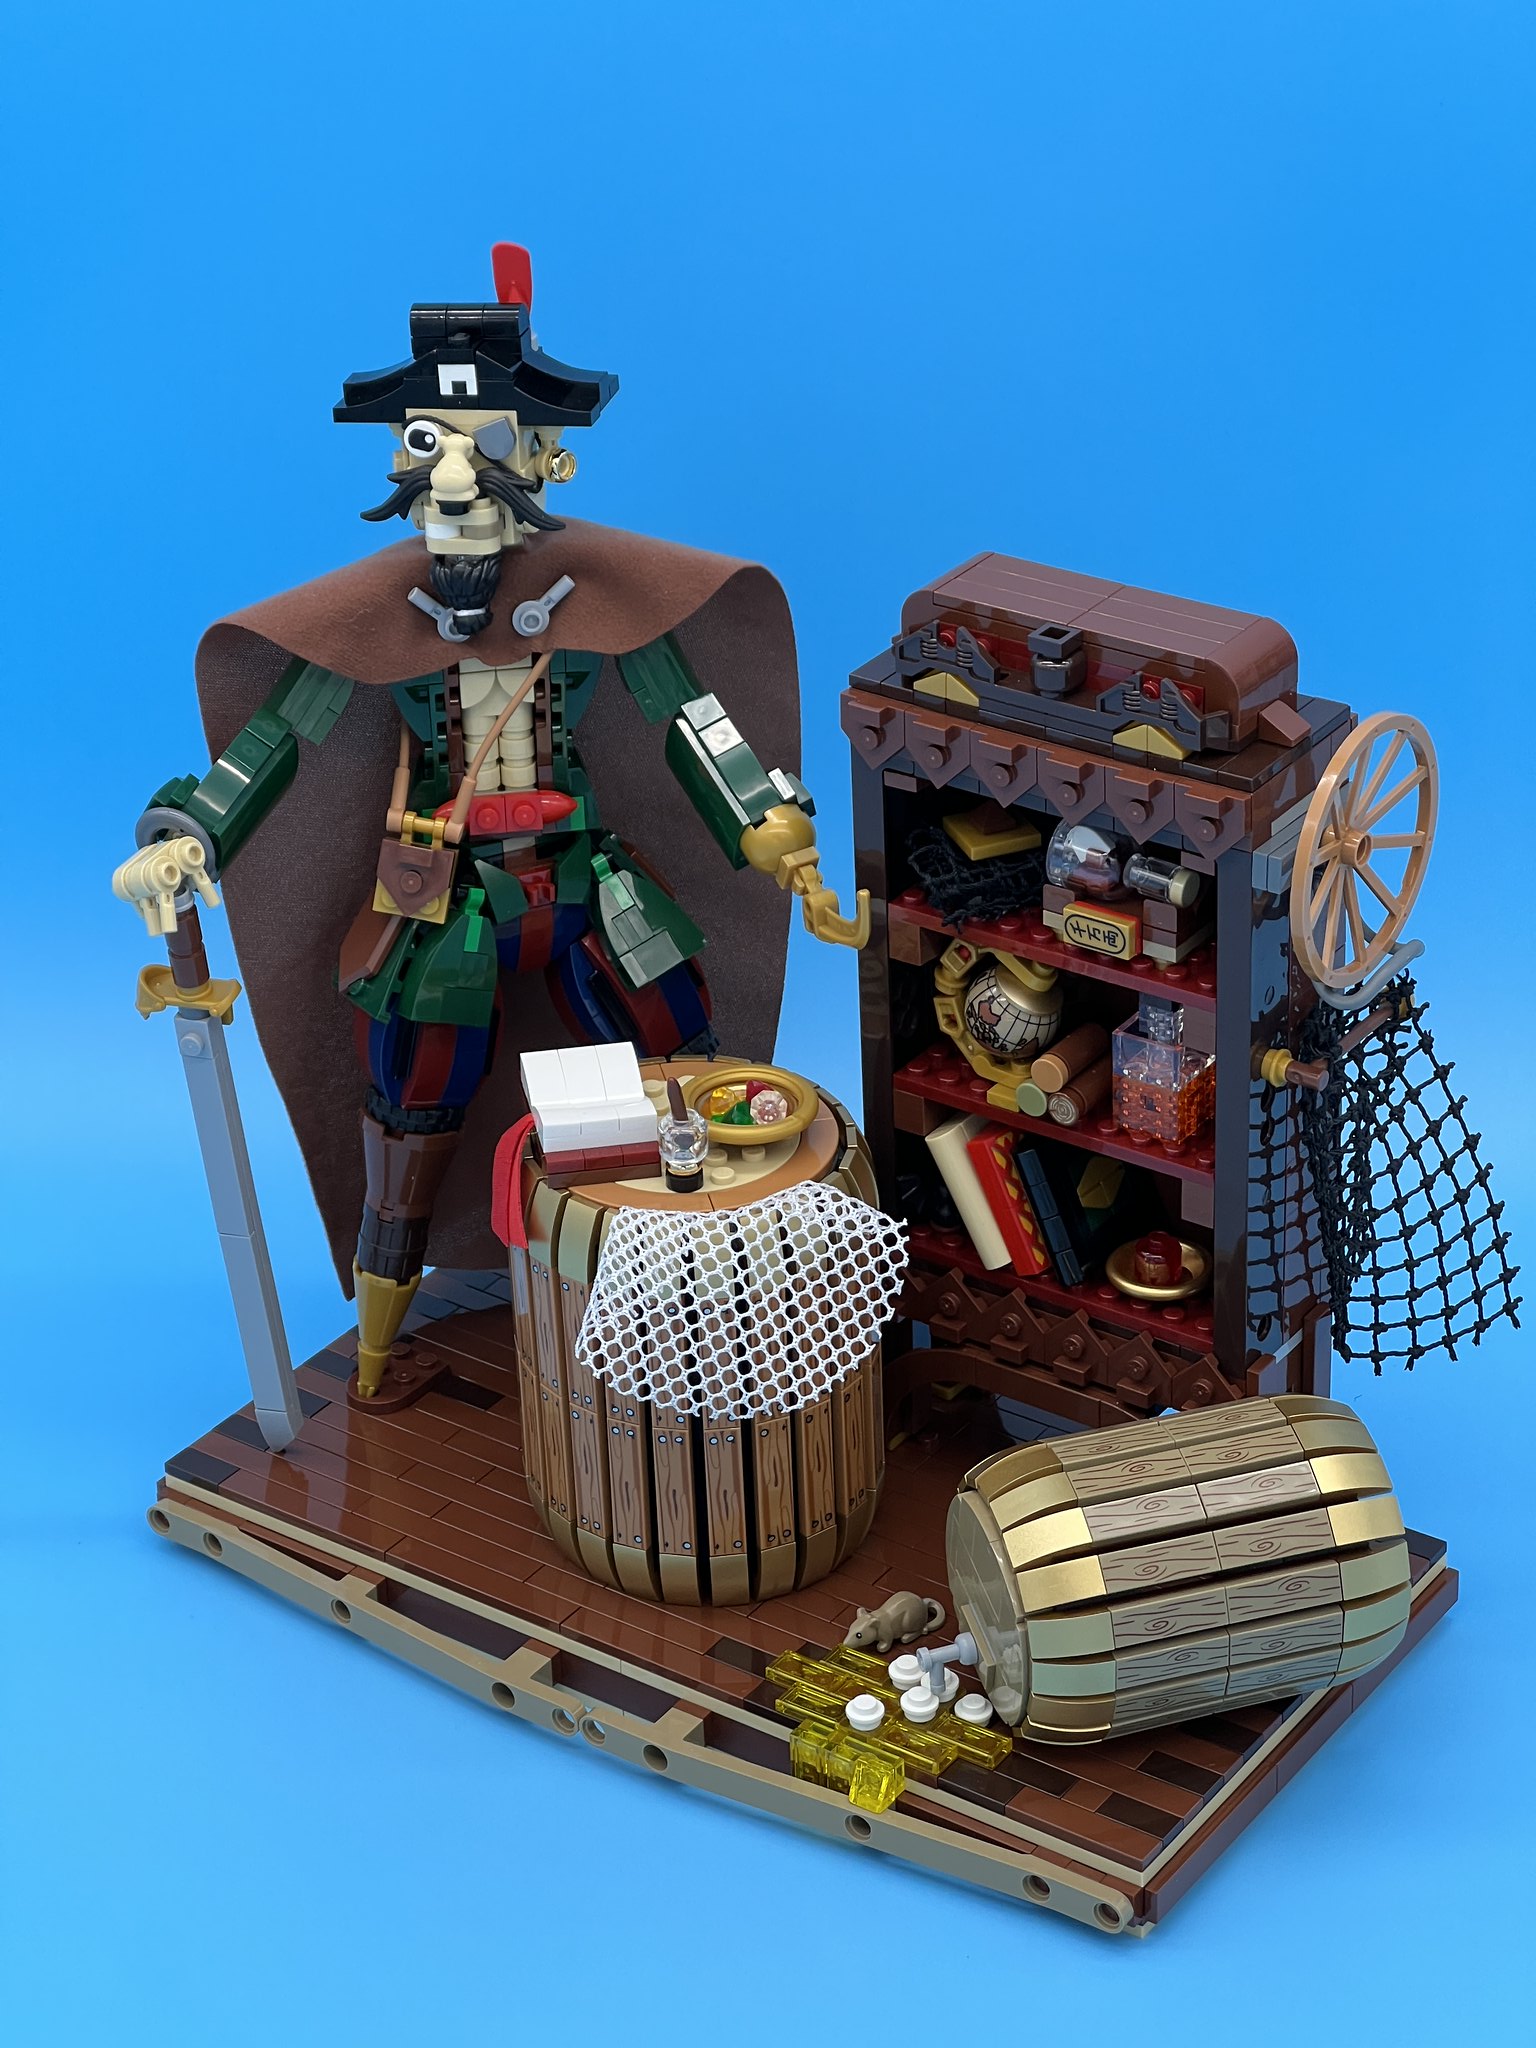 Pirate Captain’s quarters